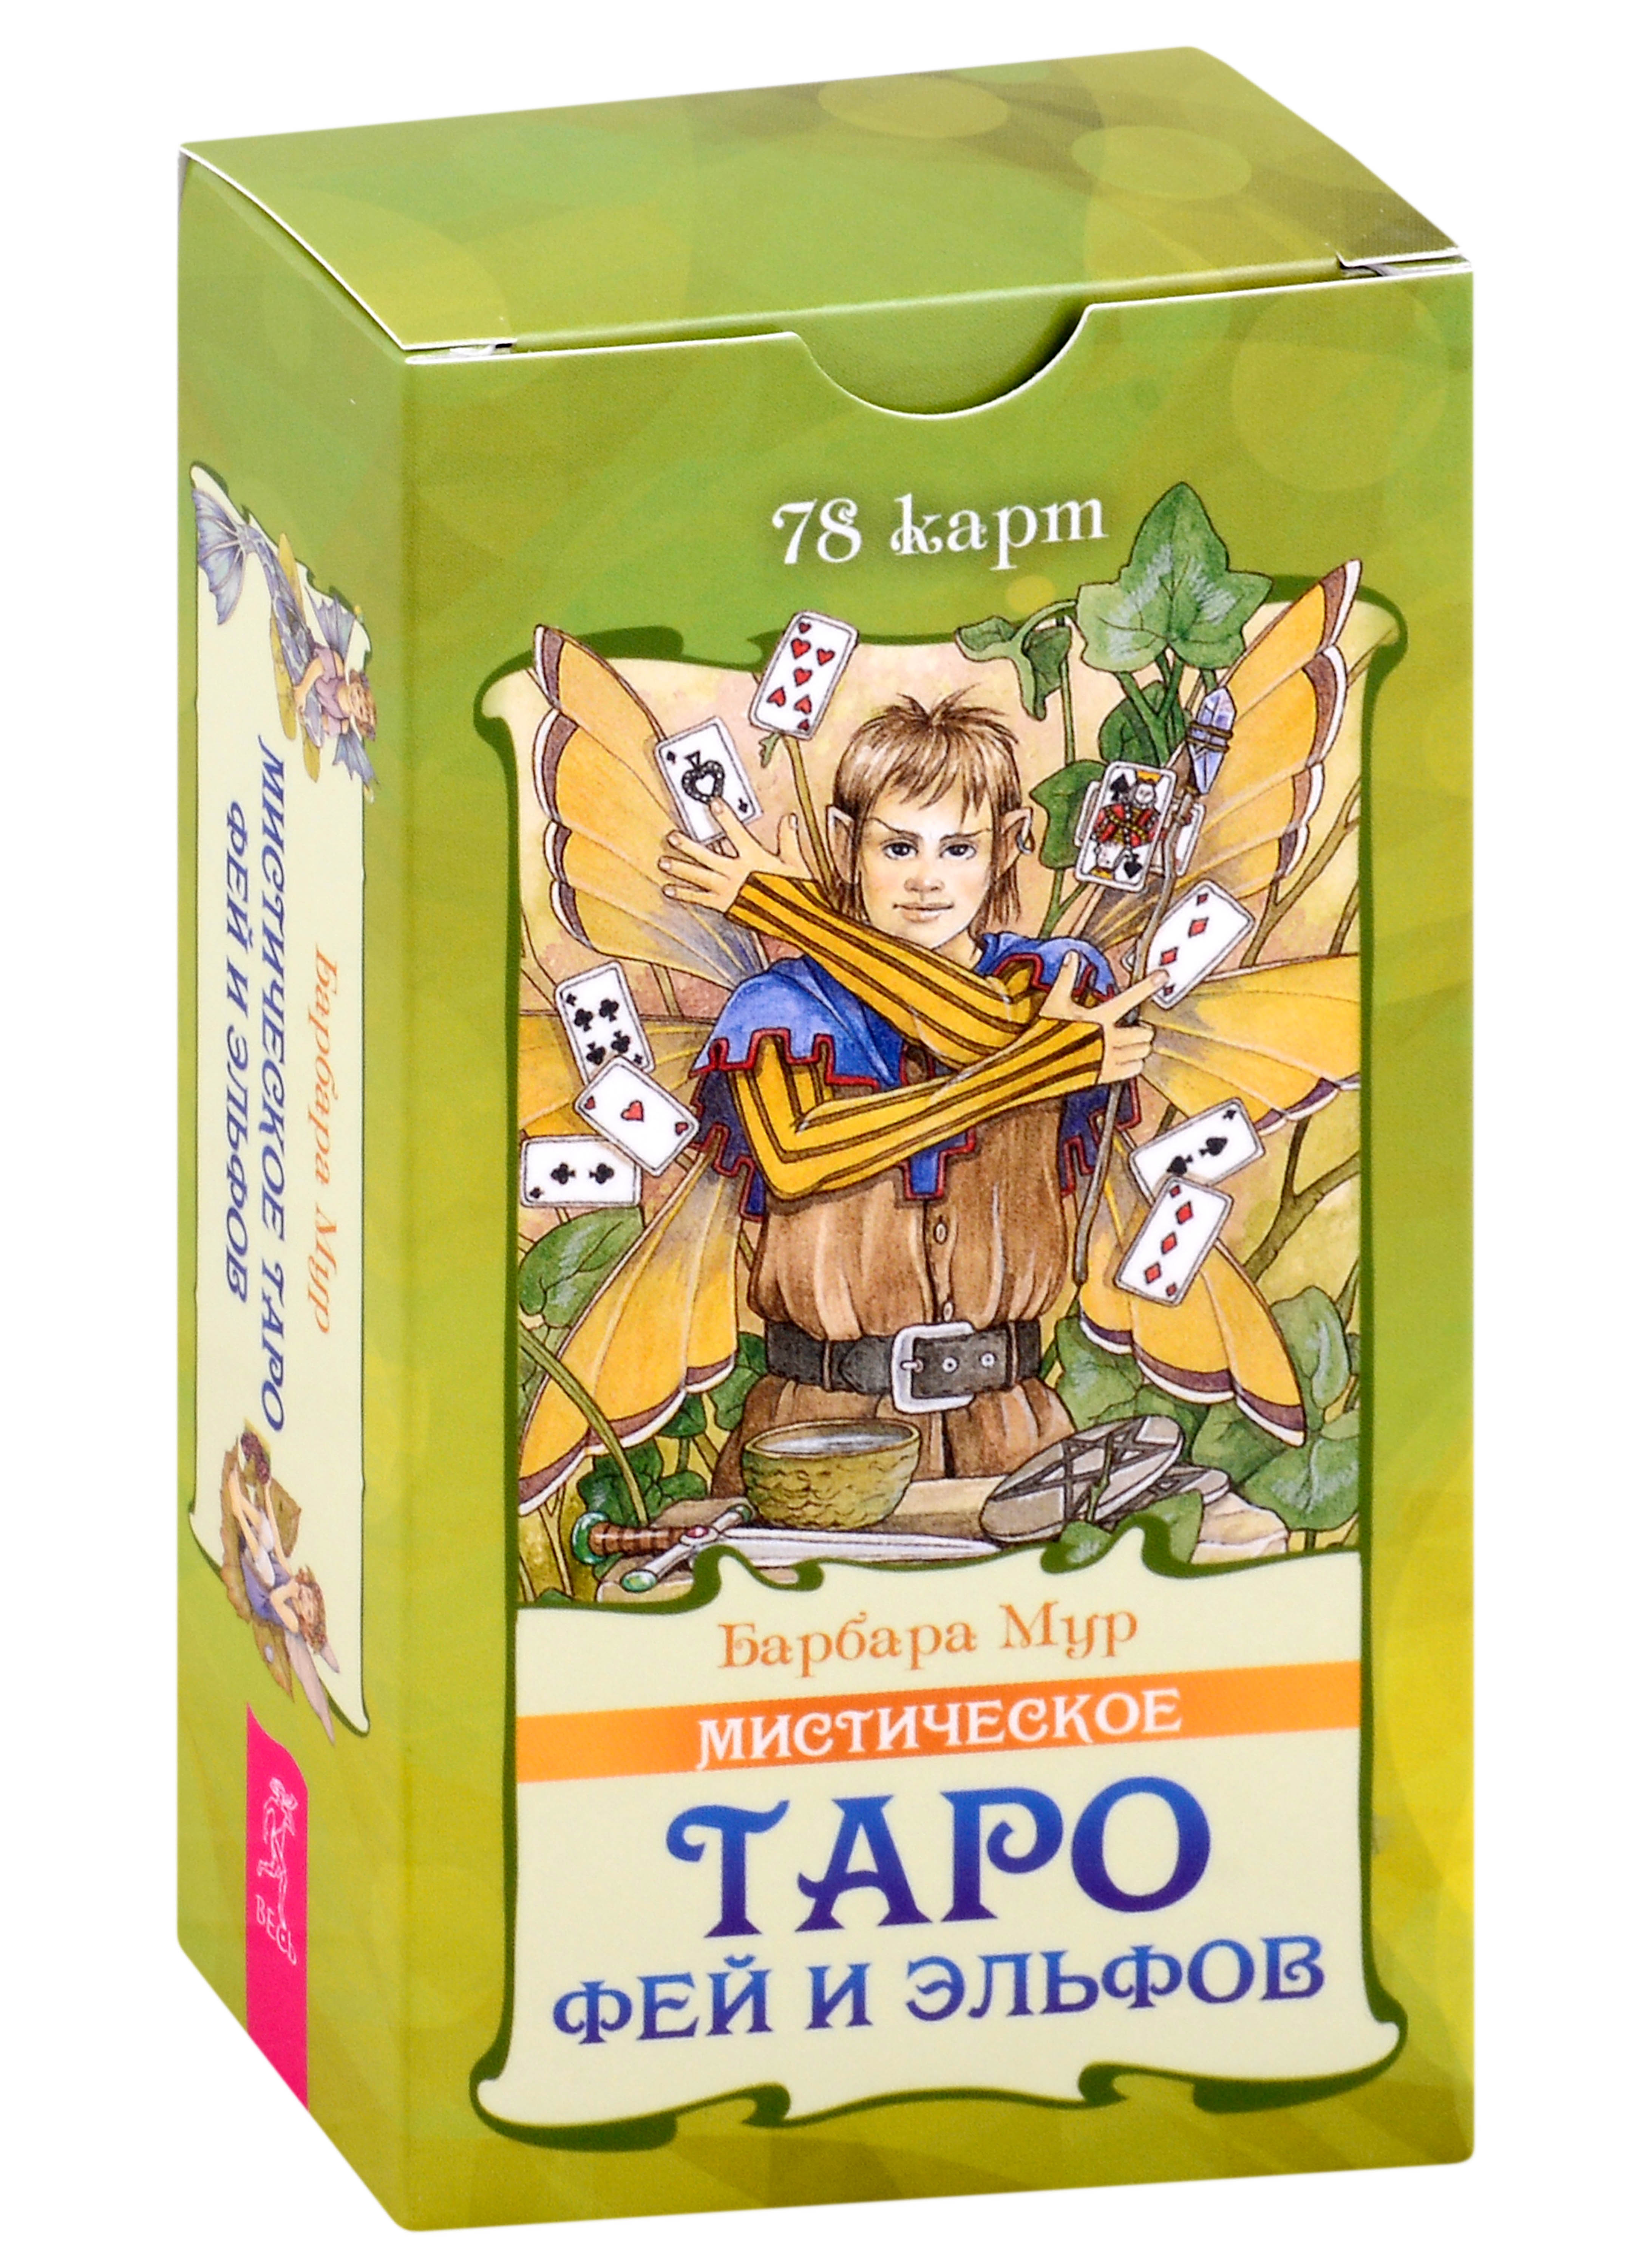 Мистическое Таро фей и эльфов (78 карт) (5015) мур томас нестареющая душа путь к смыслу и радости длинною в жизнь